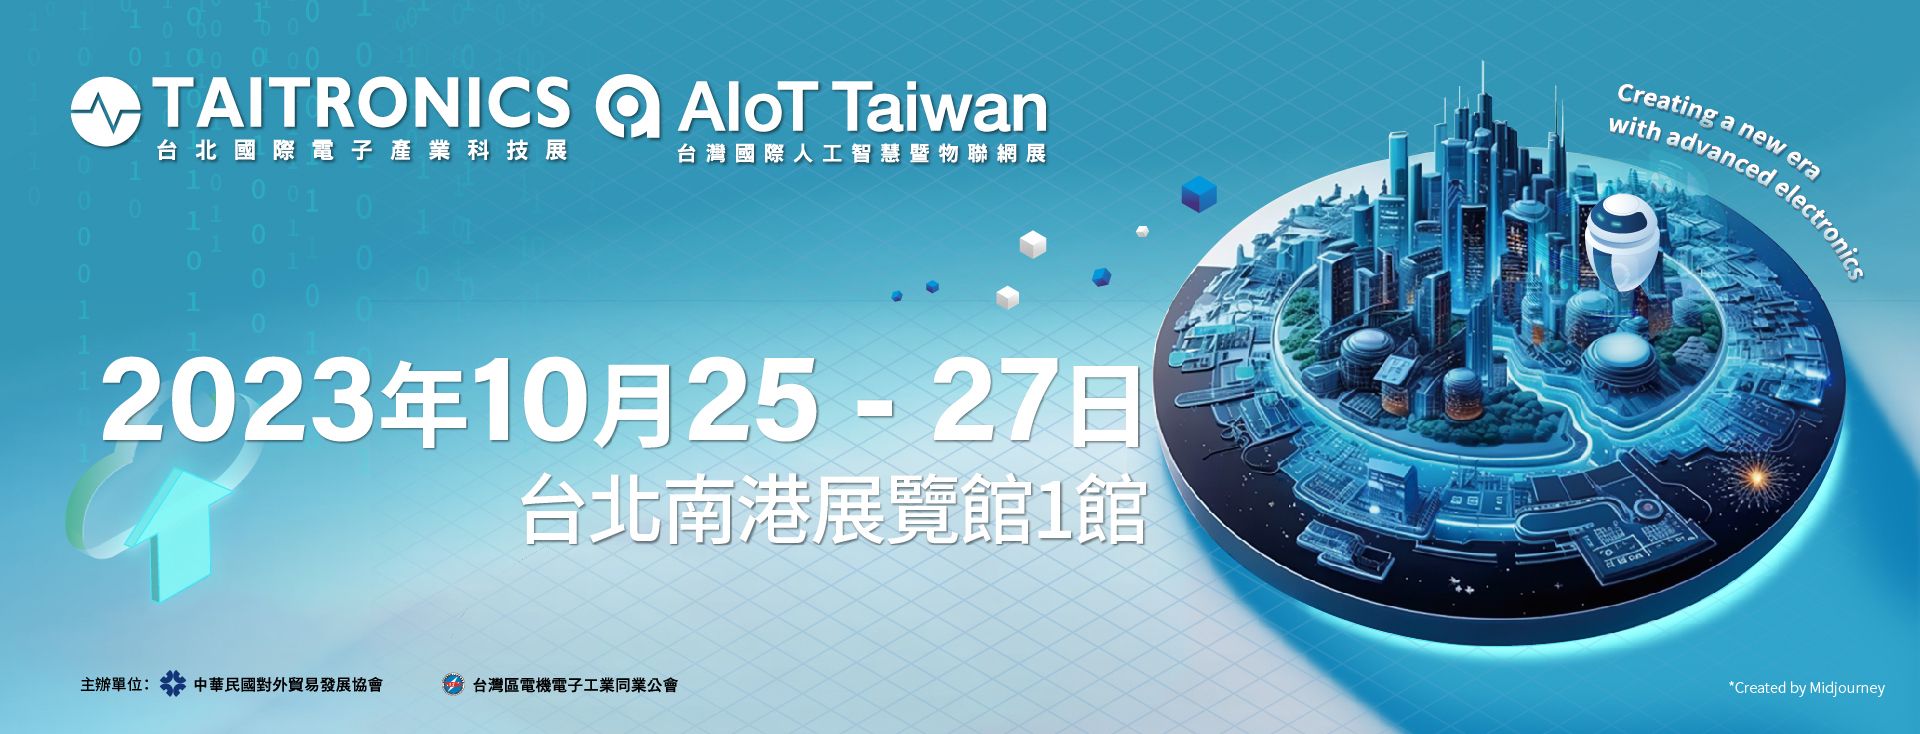 Taipei TAITRONICS 2023 - de 25 de outubro a 27 de outubro de 2023